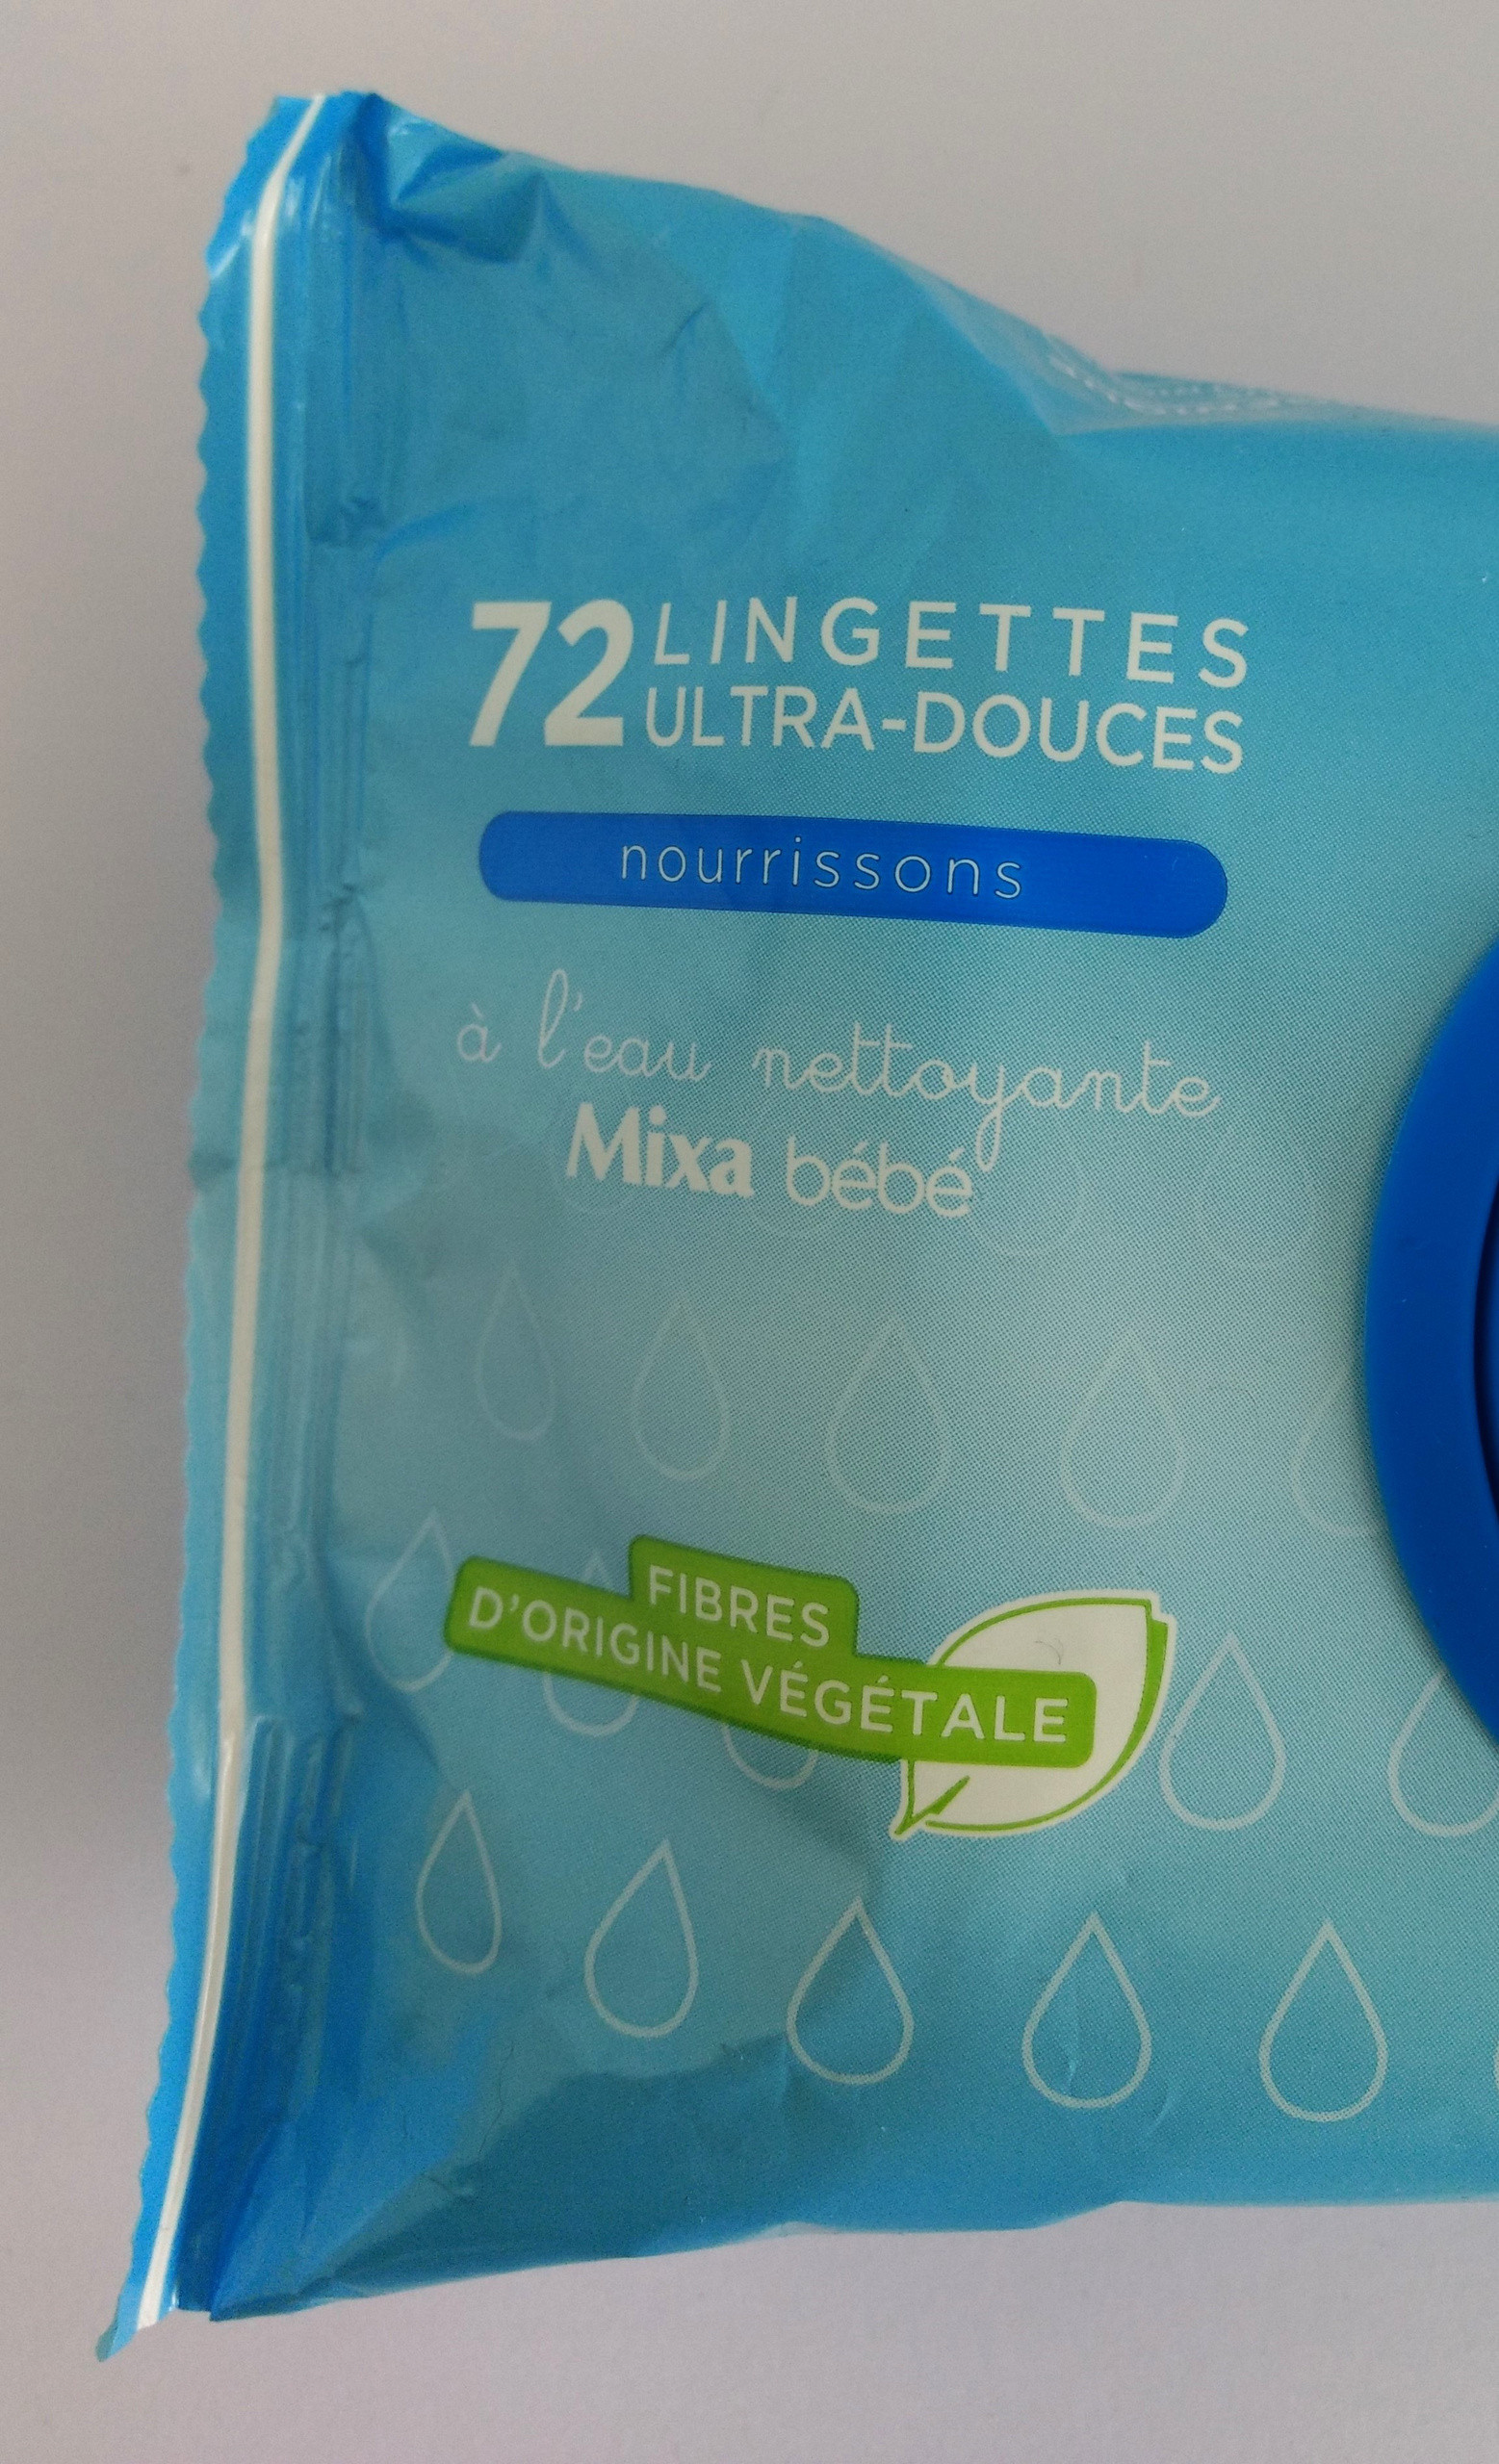 Lingettes Mixa Bébé ultra-douces à l'eau nettoyante (x72